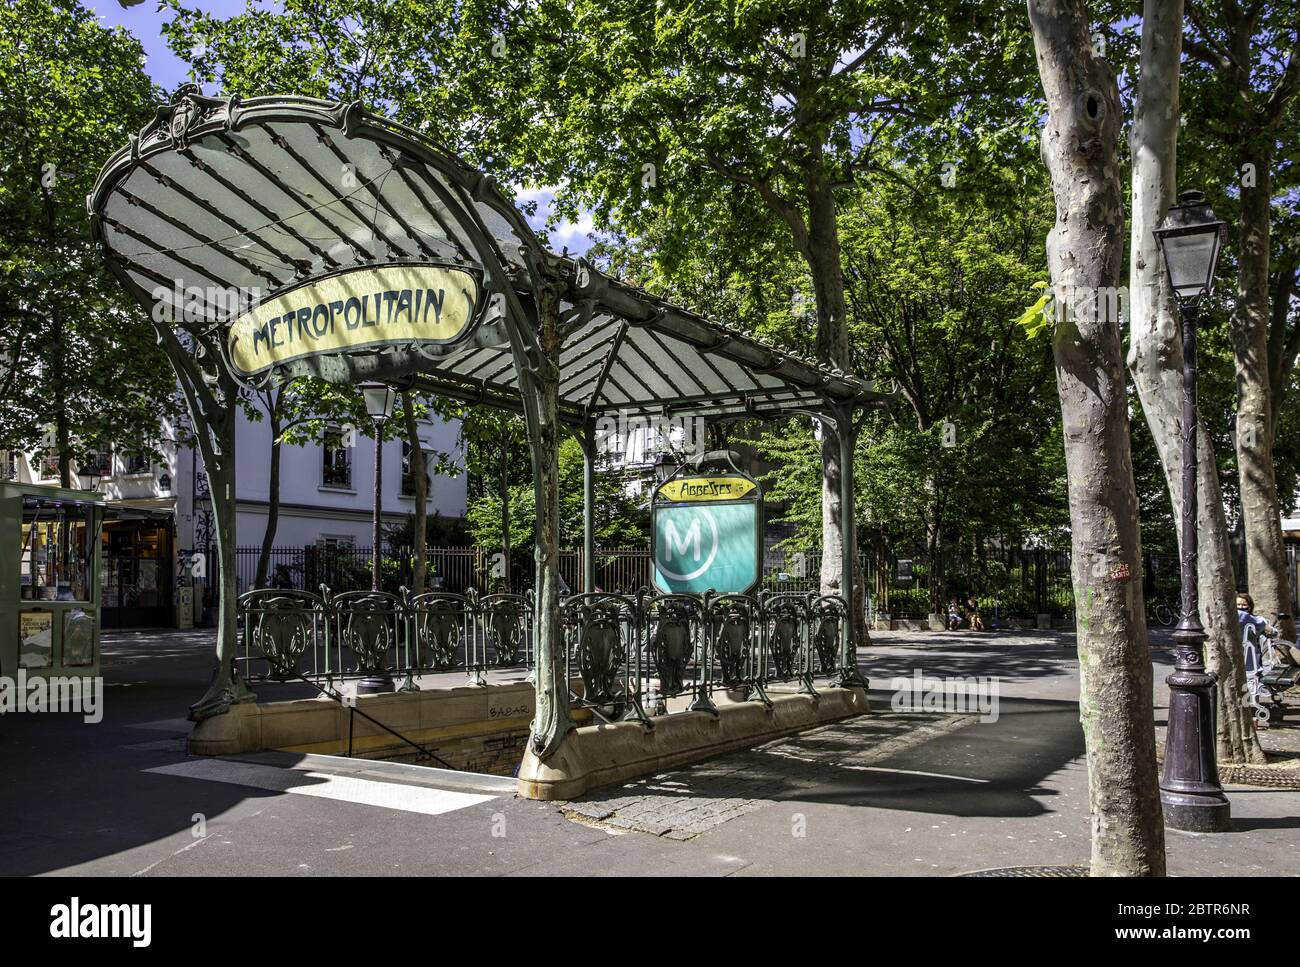 Paris, Francia - 20 de mayo de 2020: Estación de metrópolis de las abadesas en Montmartre, famoso símbolo de estilo Art Nouveau Foto de stock